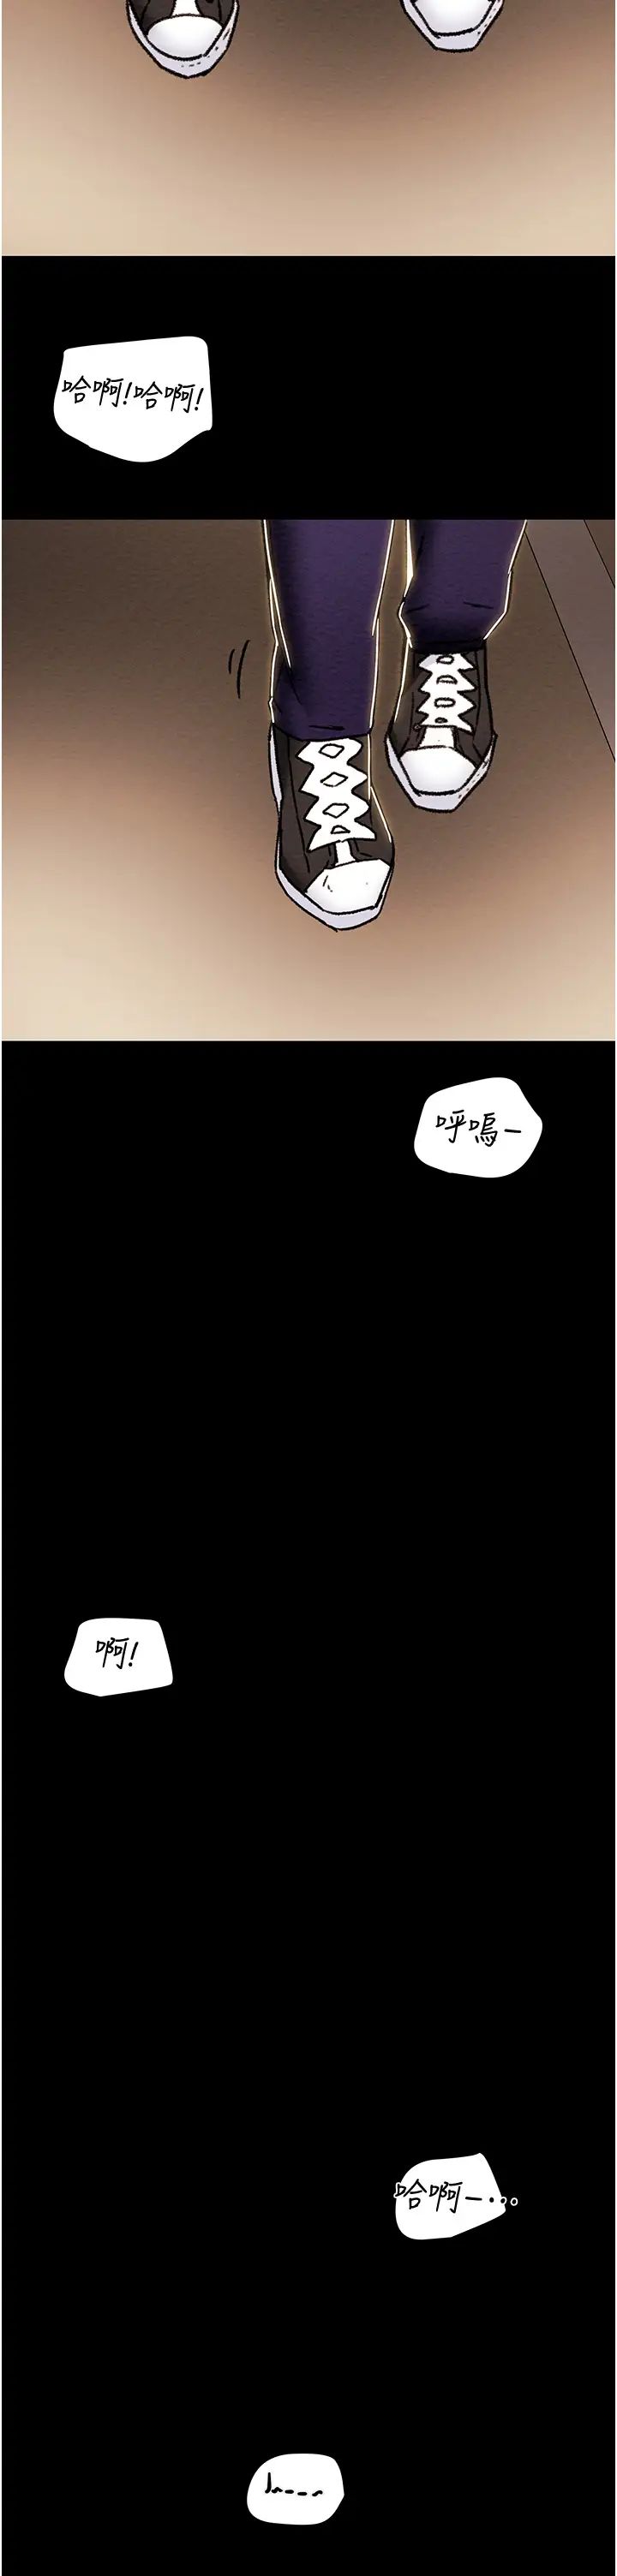 韩国污漫画 純情女攻略計劃 第53话释放在小穴内的快感 53